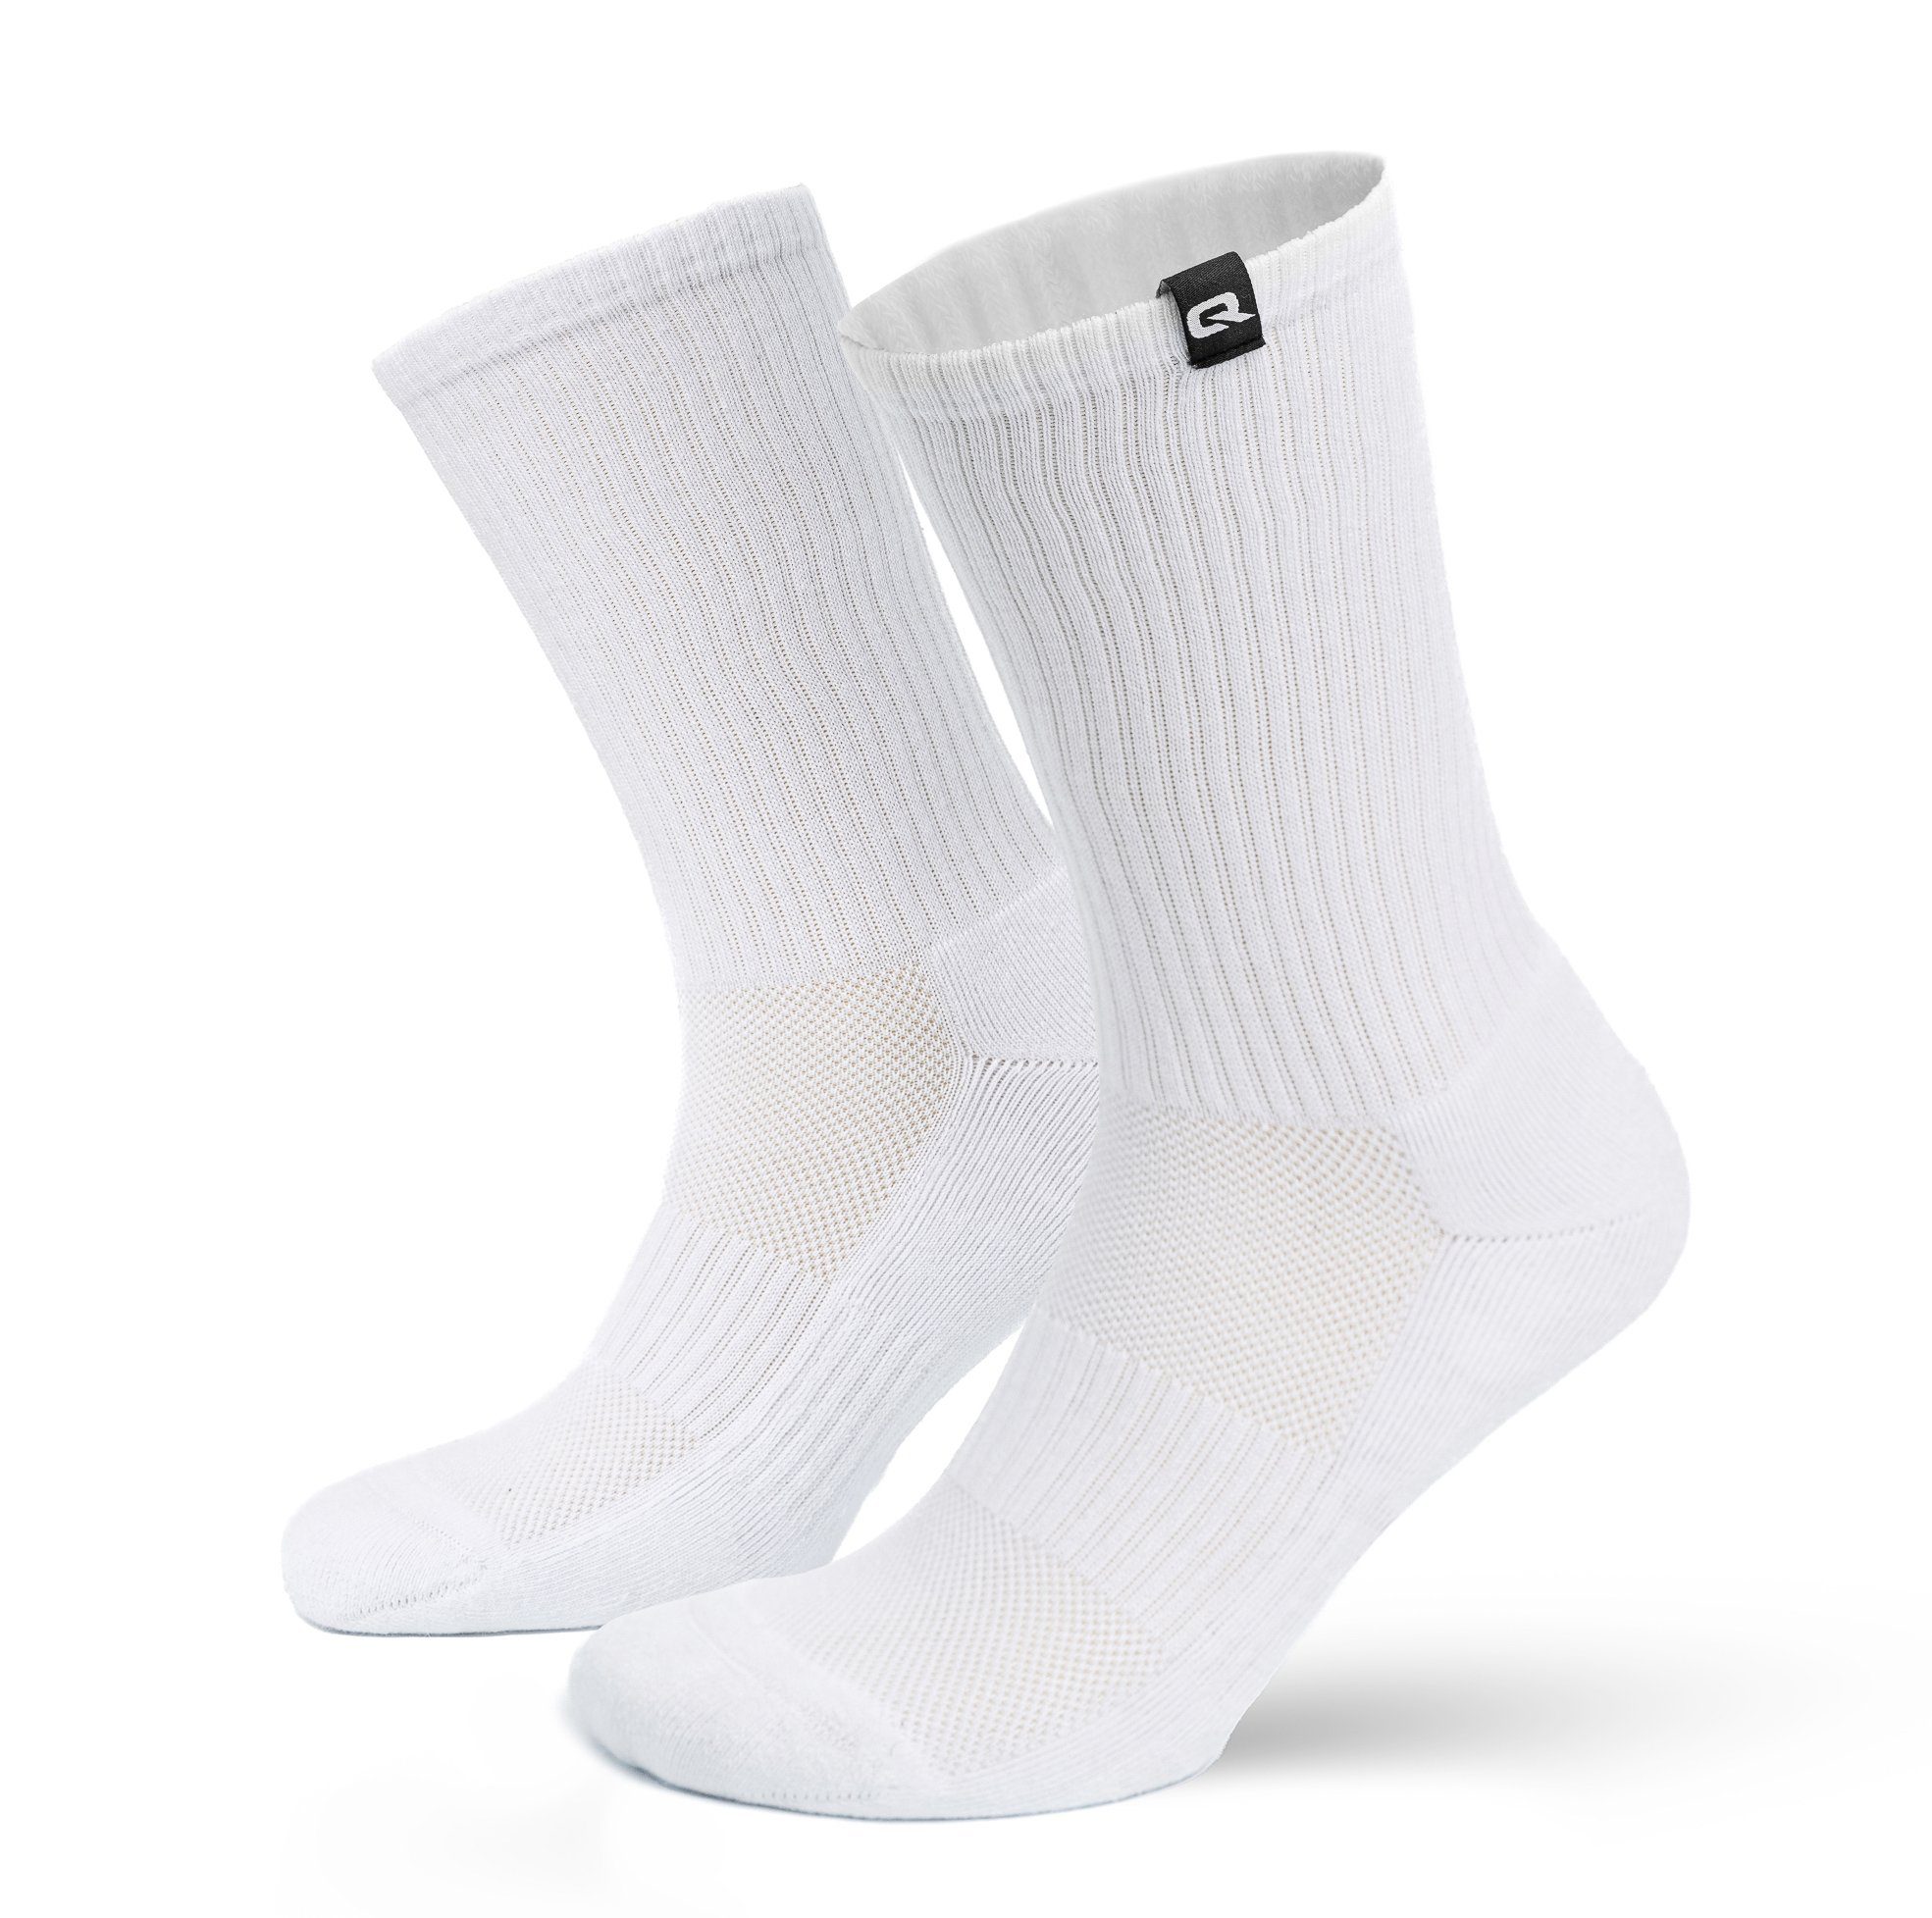 QSOCKS Tennissocken Crew Laufsocken Sportsocken Spezielle Polsterung, für Damen & Herren (Packung, 4 Paar) Qualität Socken Weiß